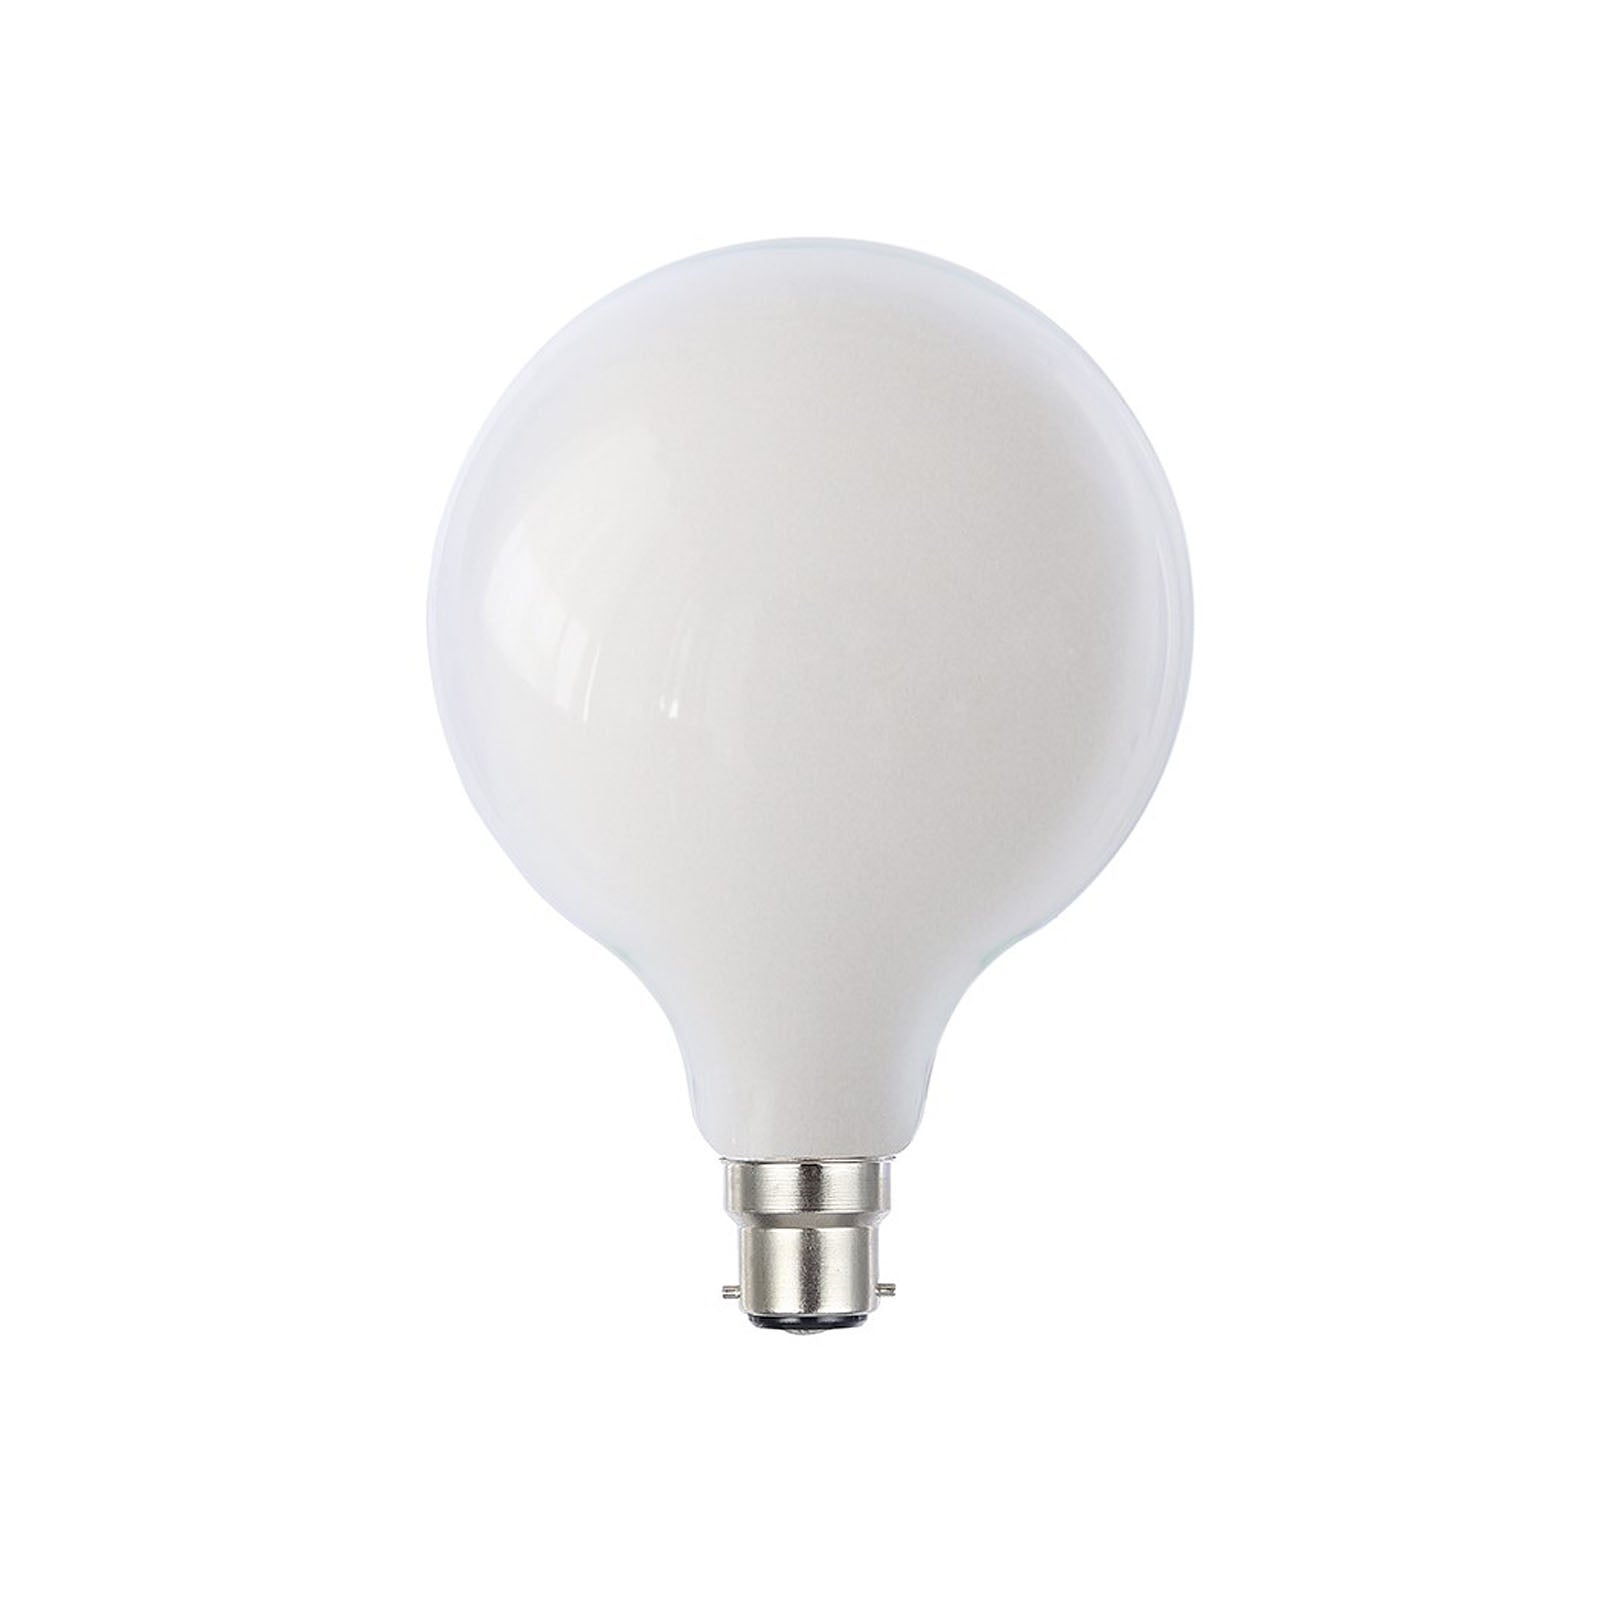 Harper Living G125/B22 8W Opal Glass Warm White Dimmable LED Globe Bulb, Single Bulb